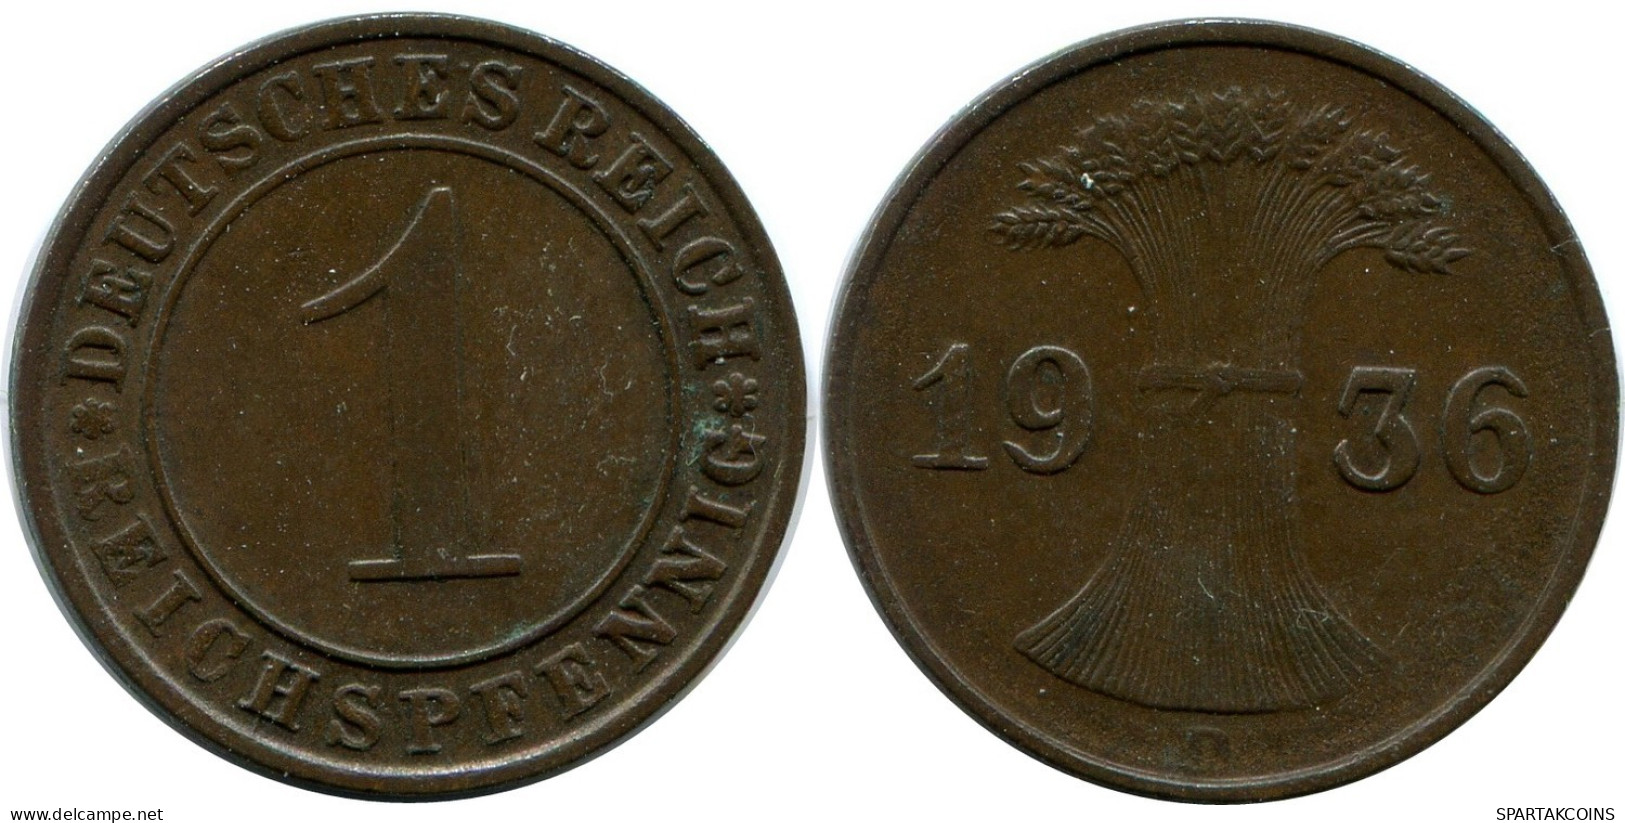 1 REICHSPFENNIG 1936 D ALEMANIA Moneda GERMANY #DB804.E.A - 1 Reichspfennig